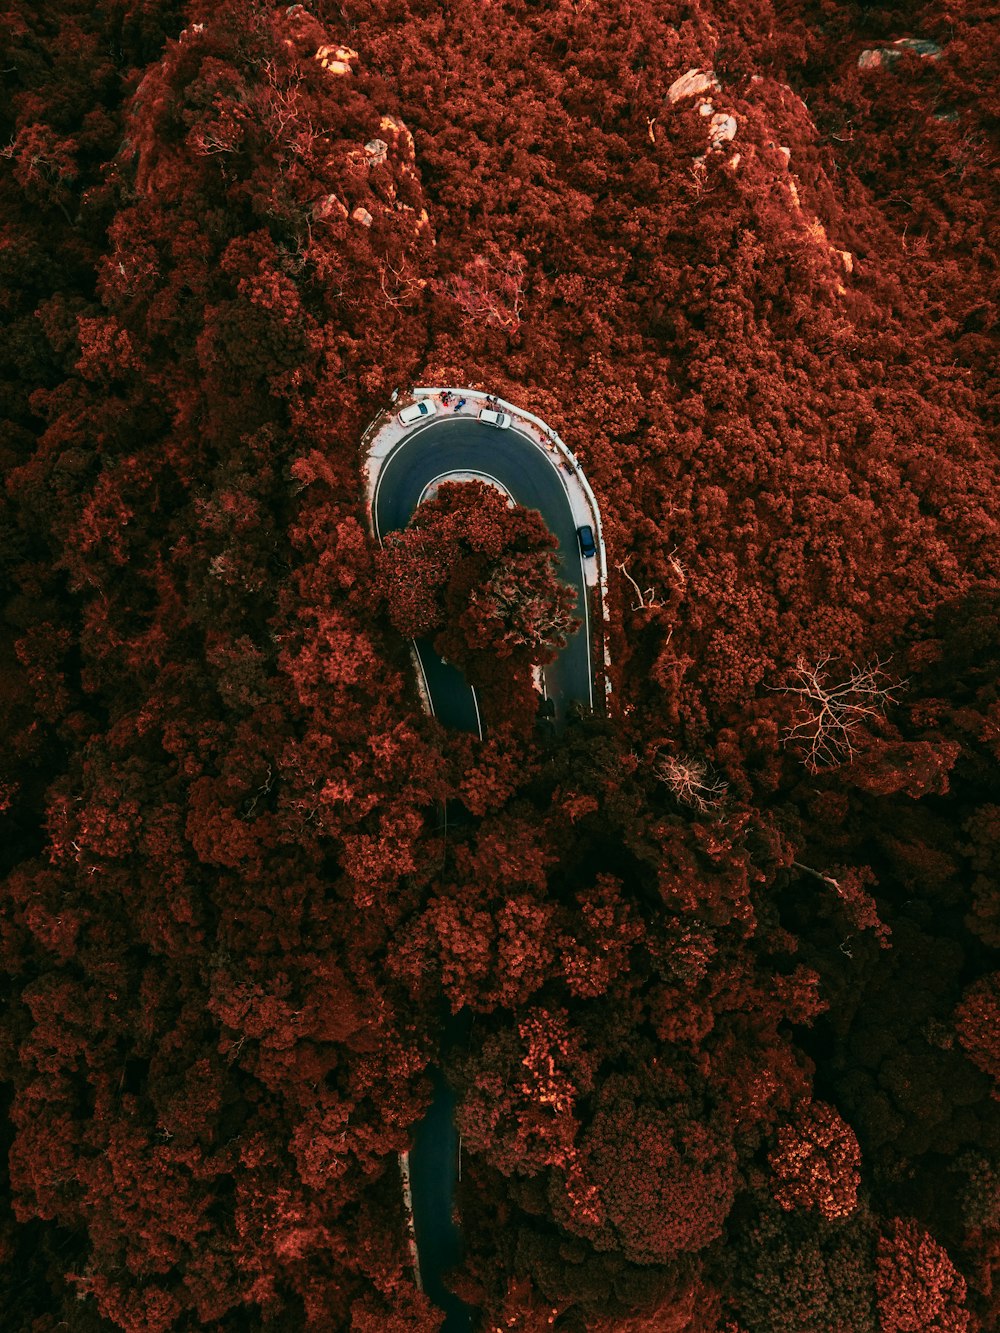 Eine Person, die in einem Kreis steht, umgeben von roten Blättern